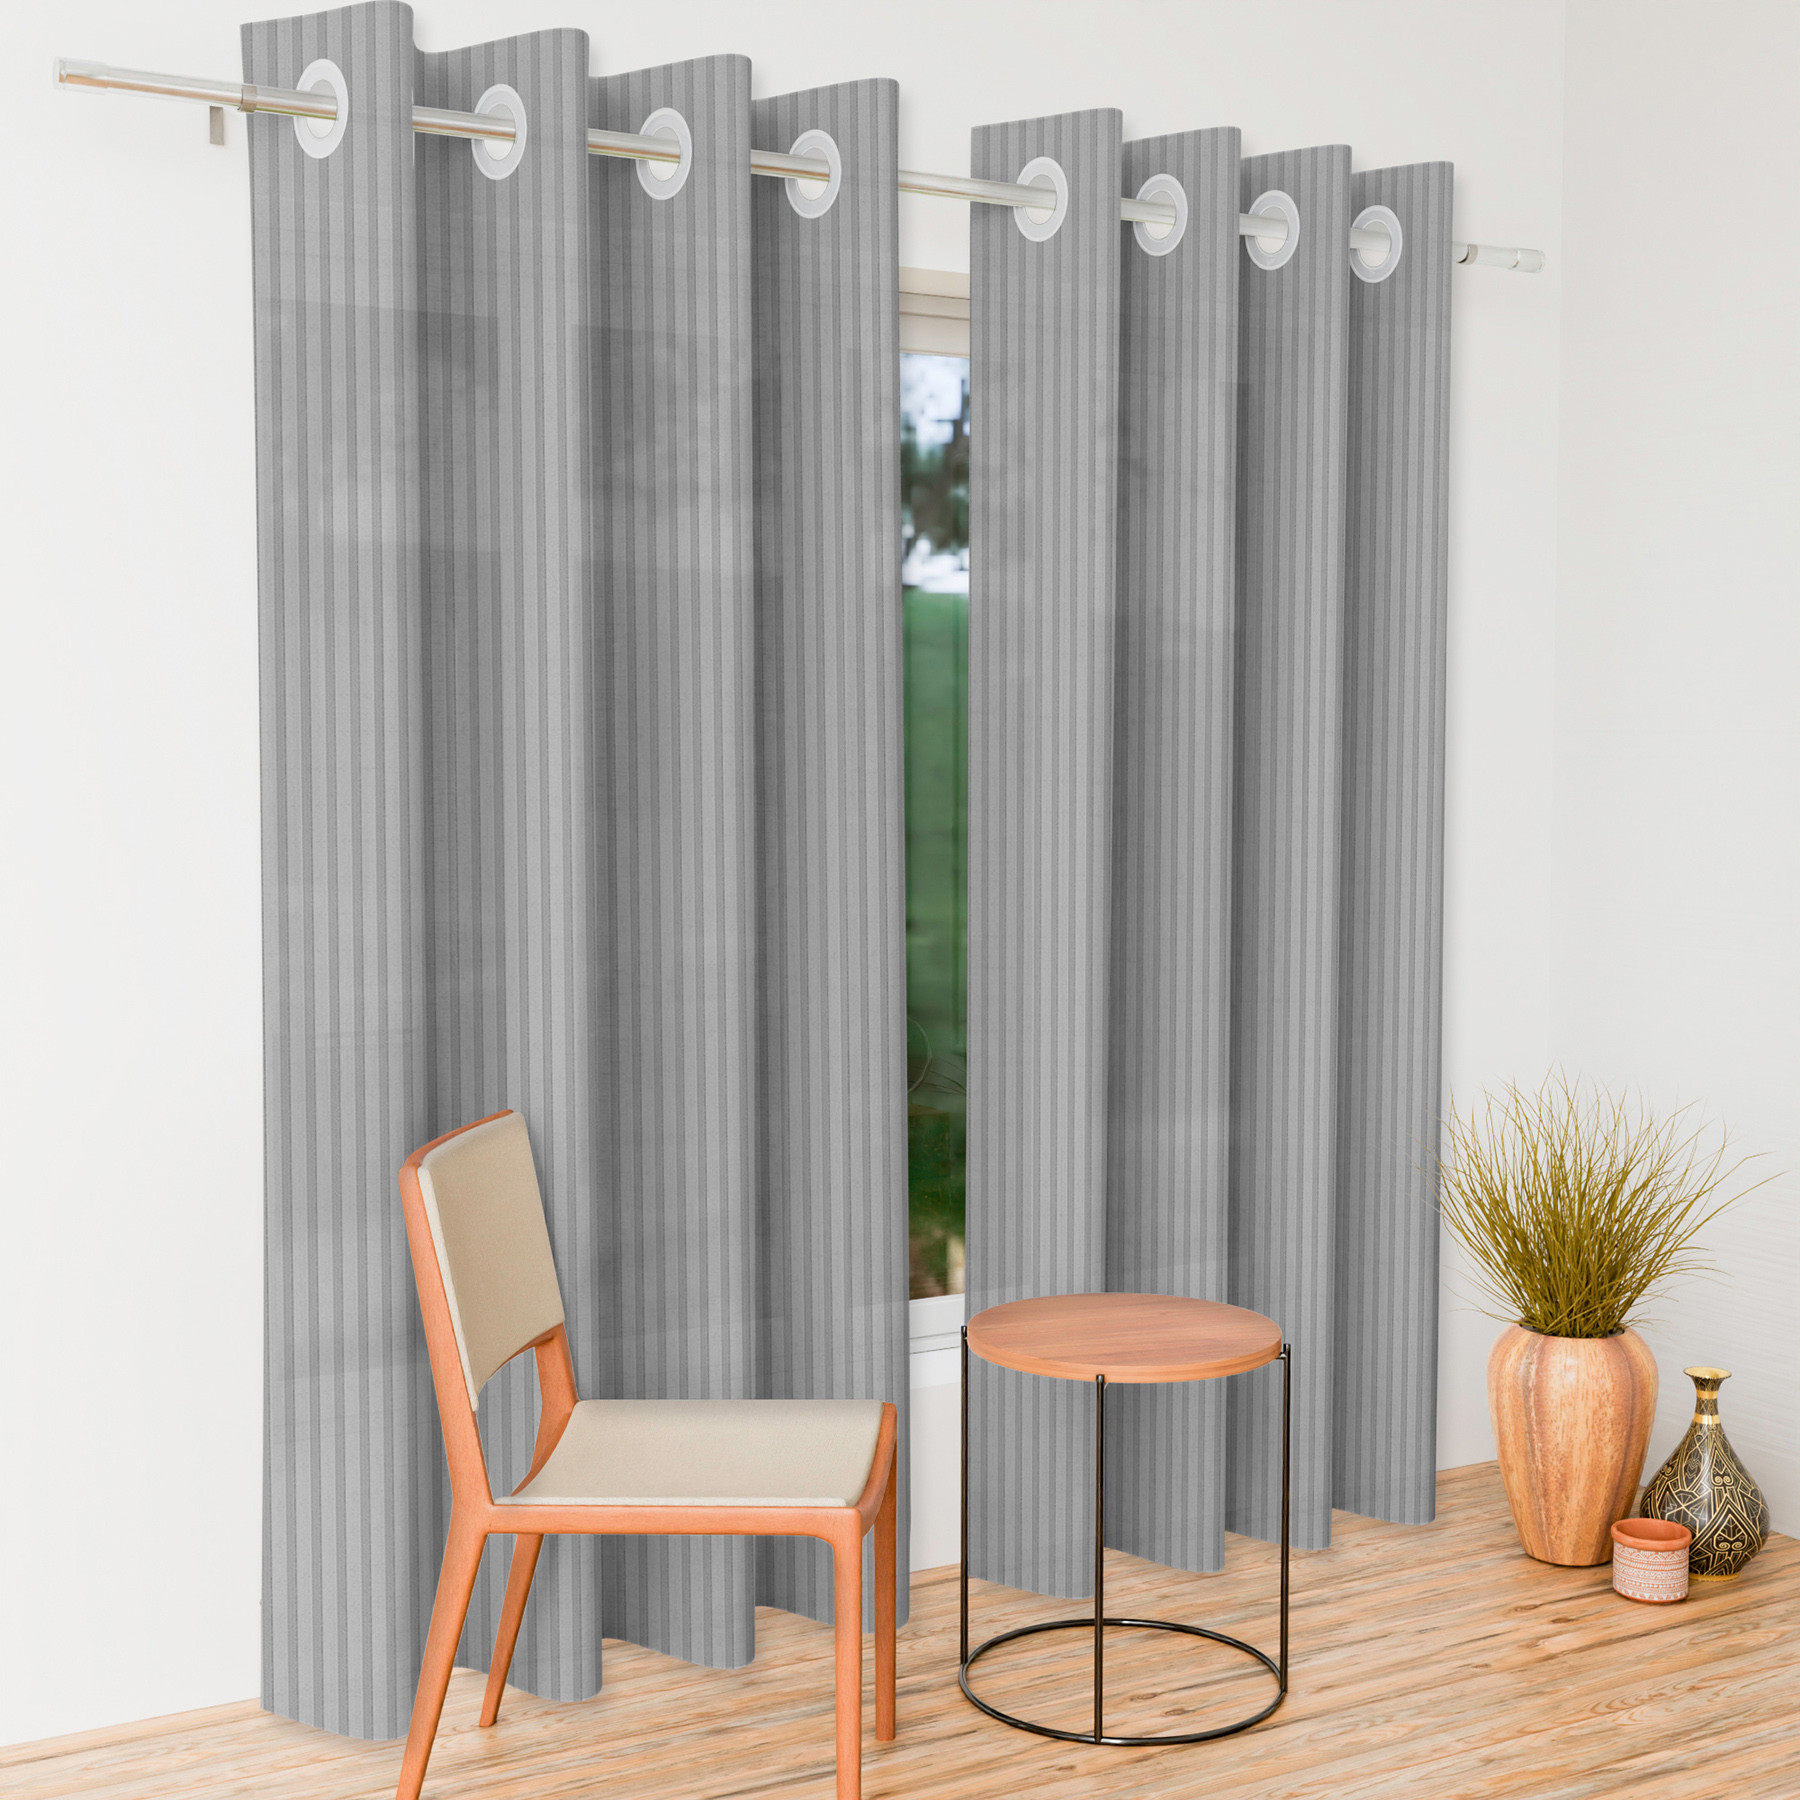 Kuber Industries Door Curtain | Sheer Door Curtains | Parda for Living Room | Bedroom Balcony Parda | Door Curtain Parda for Home Décor | Lining Net | 7 Feet | Gray